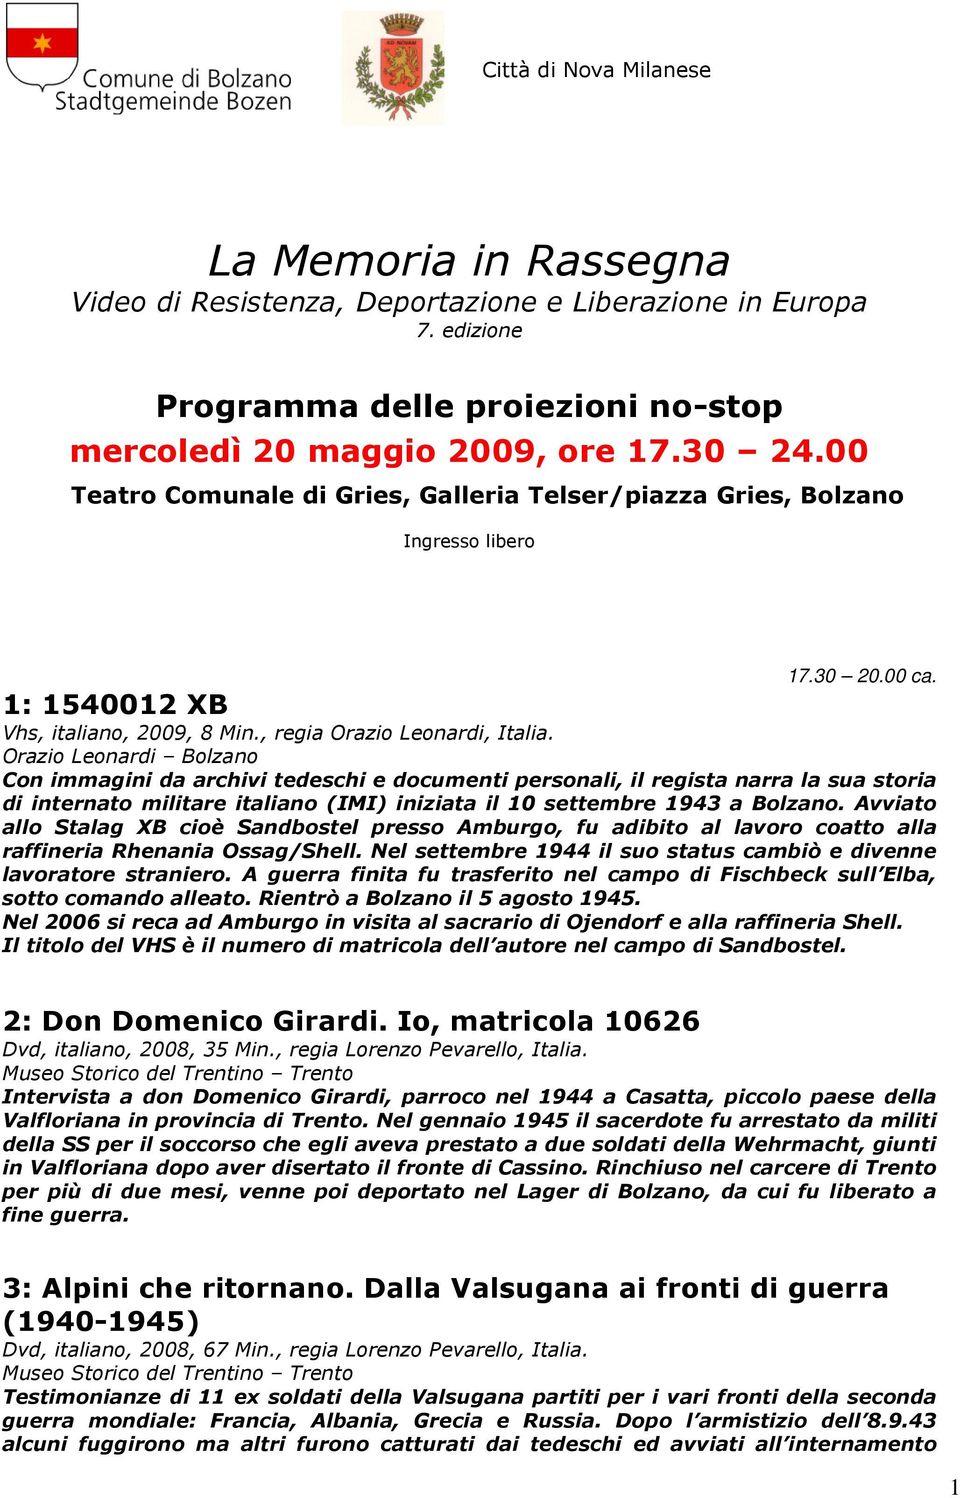 1: 1540012 XB Vhs, italiano, 2009, 8 Min., regia Orazio Leonardi, Italia.